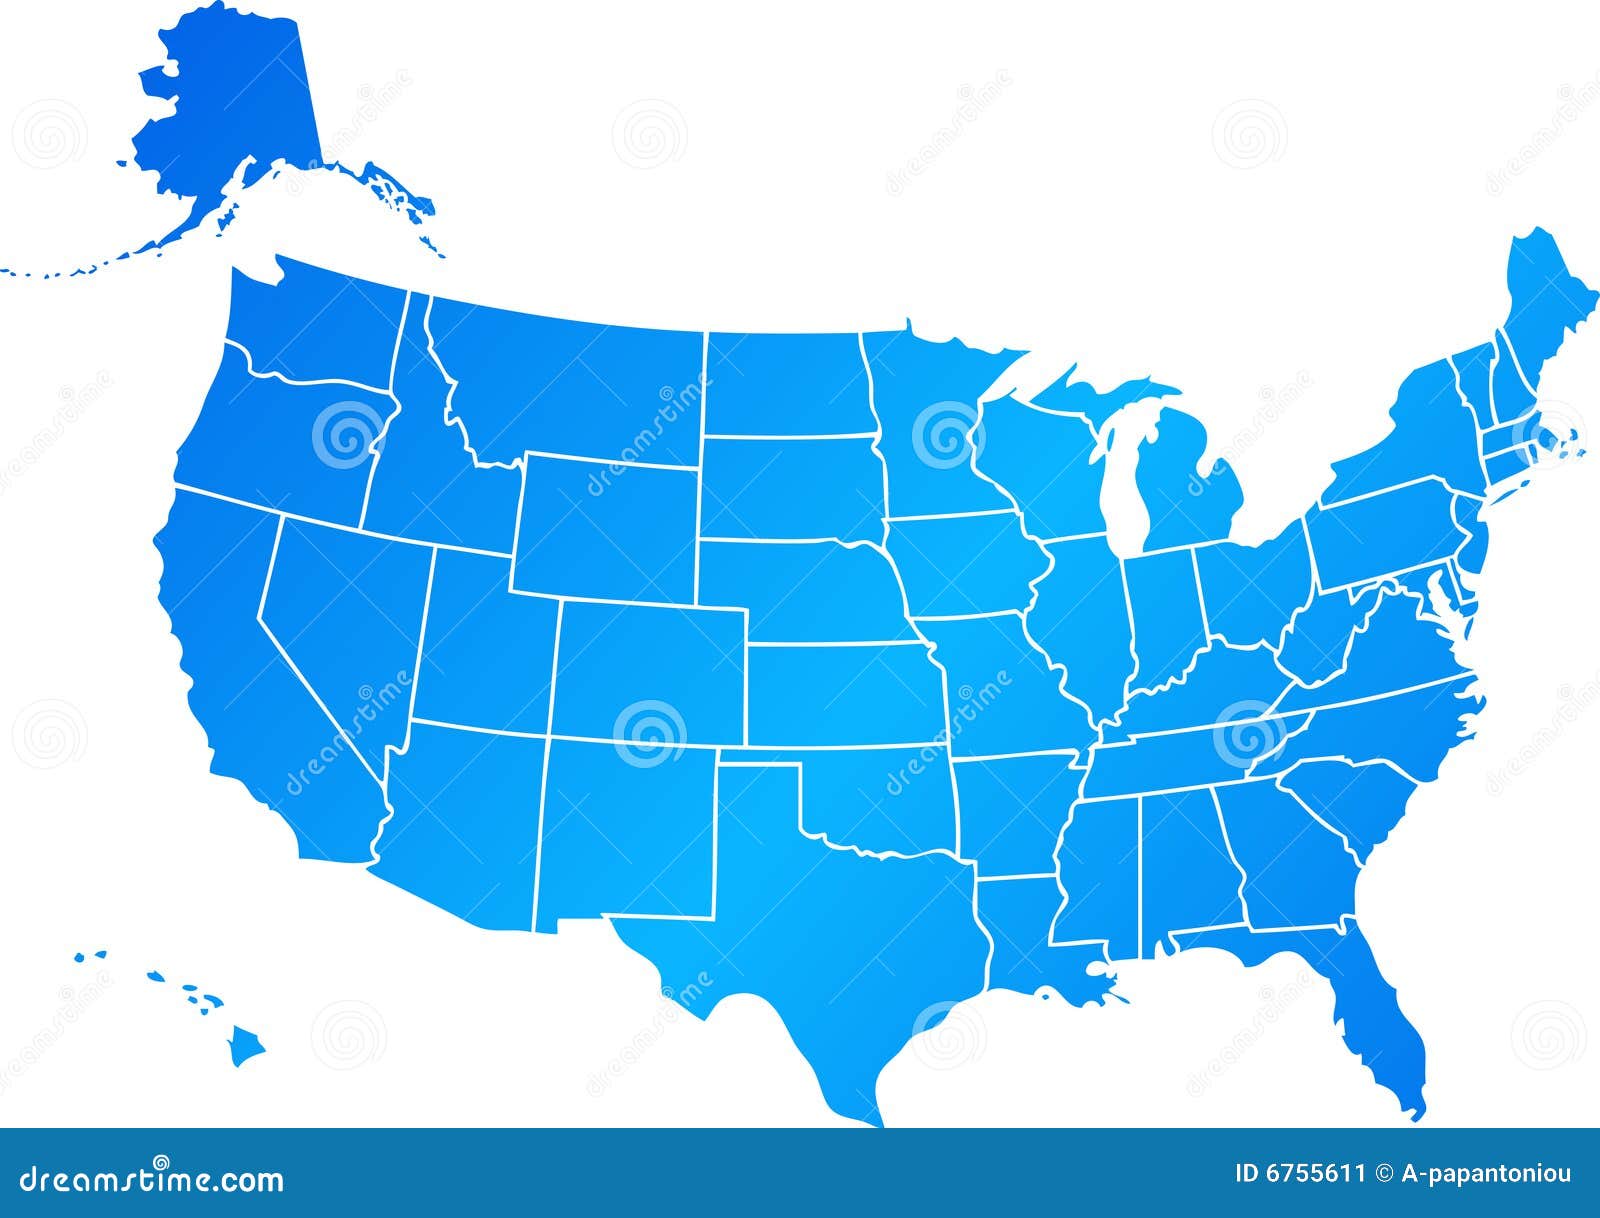 blue united states